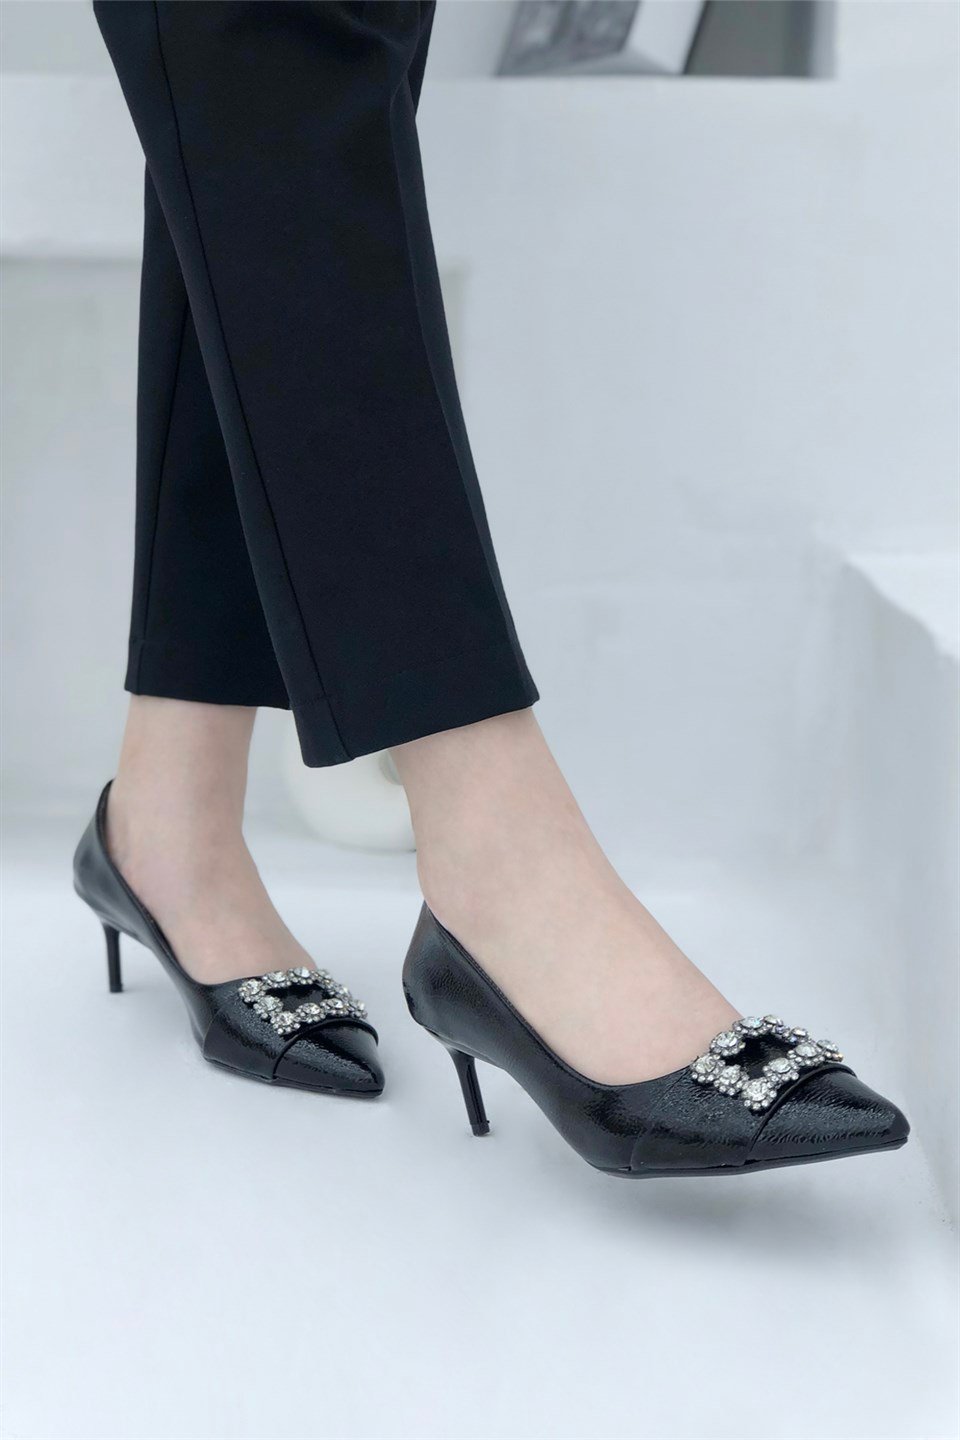 Alçak ve İnce Topuklu Tokalı Kadın Stiletto Siyah Rugan Ms-150 | My Bella  Shoes